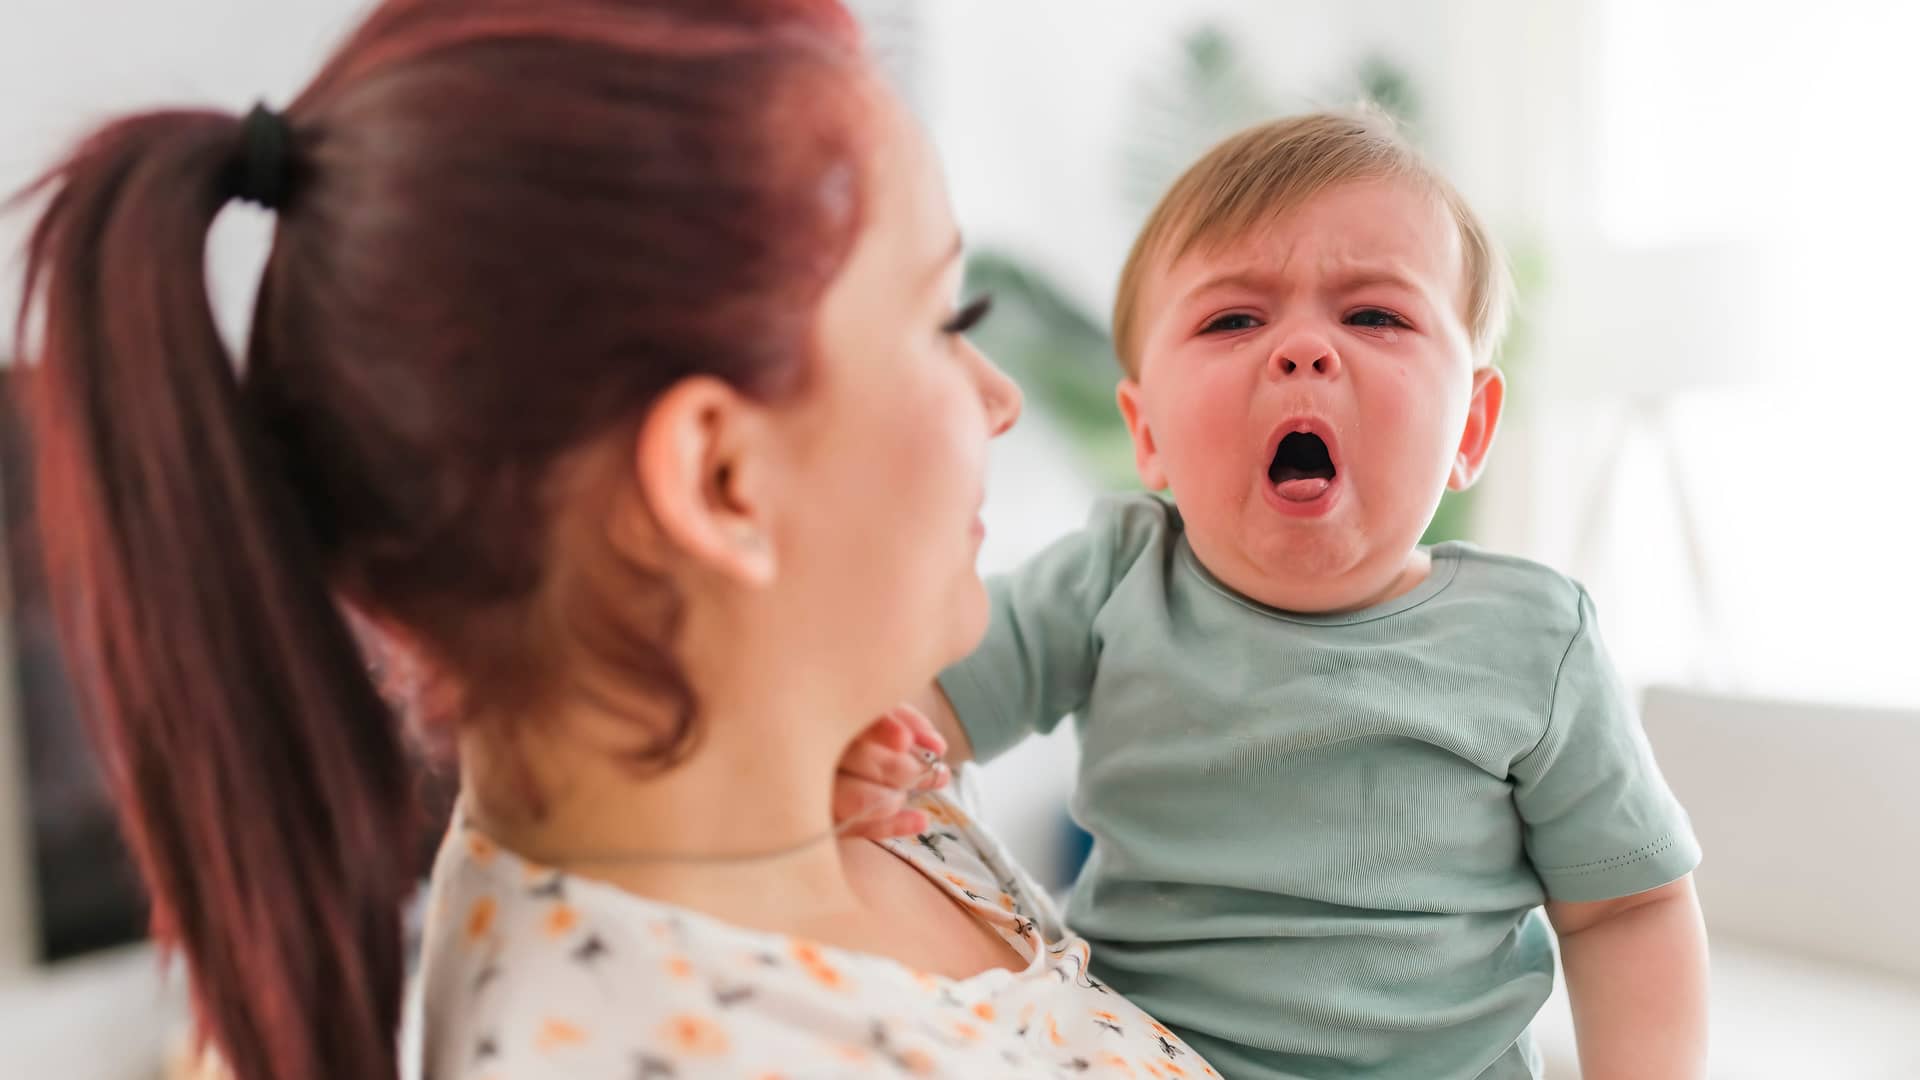 Tos en bebés: ¿cómo calmarla?